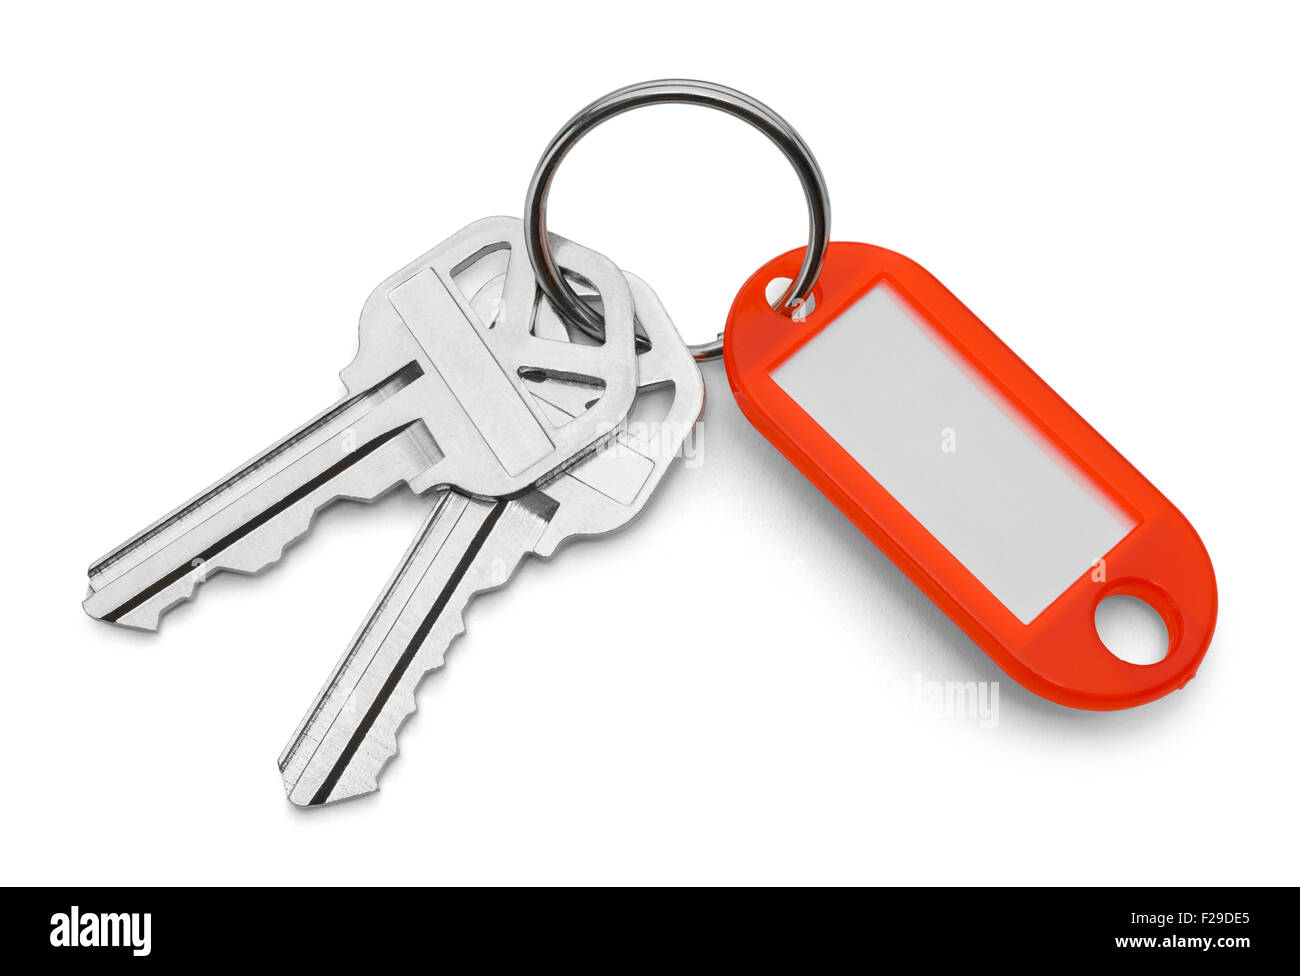 Roter Schlüsselanhänger Tag und Schlüssel, Isolated on White Background. Stockfoto